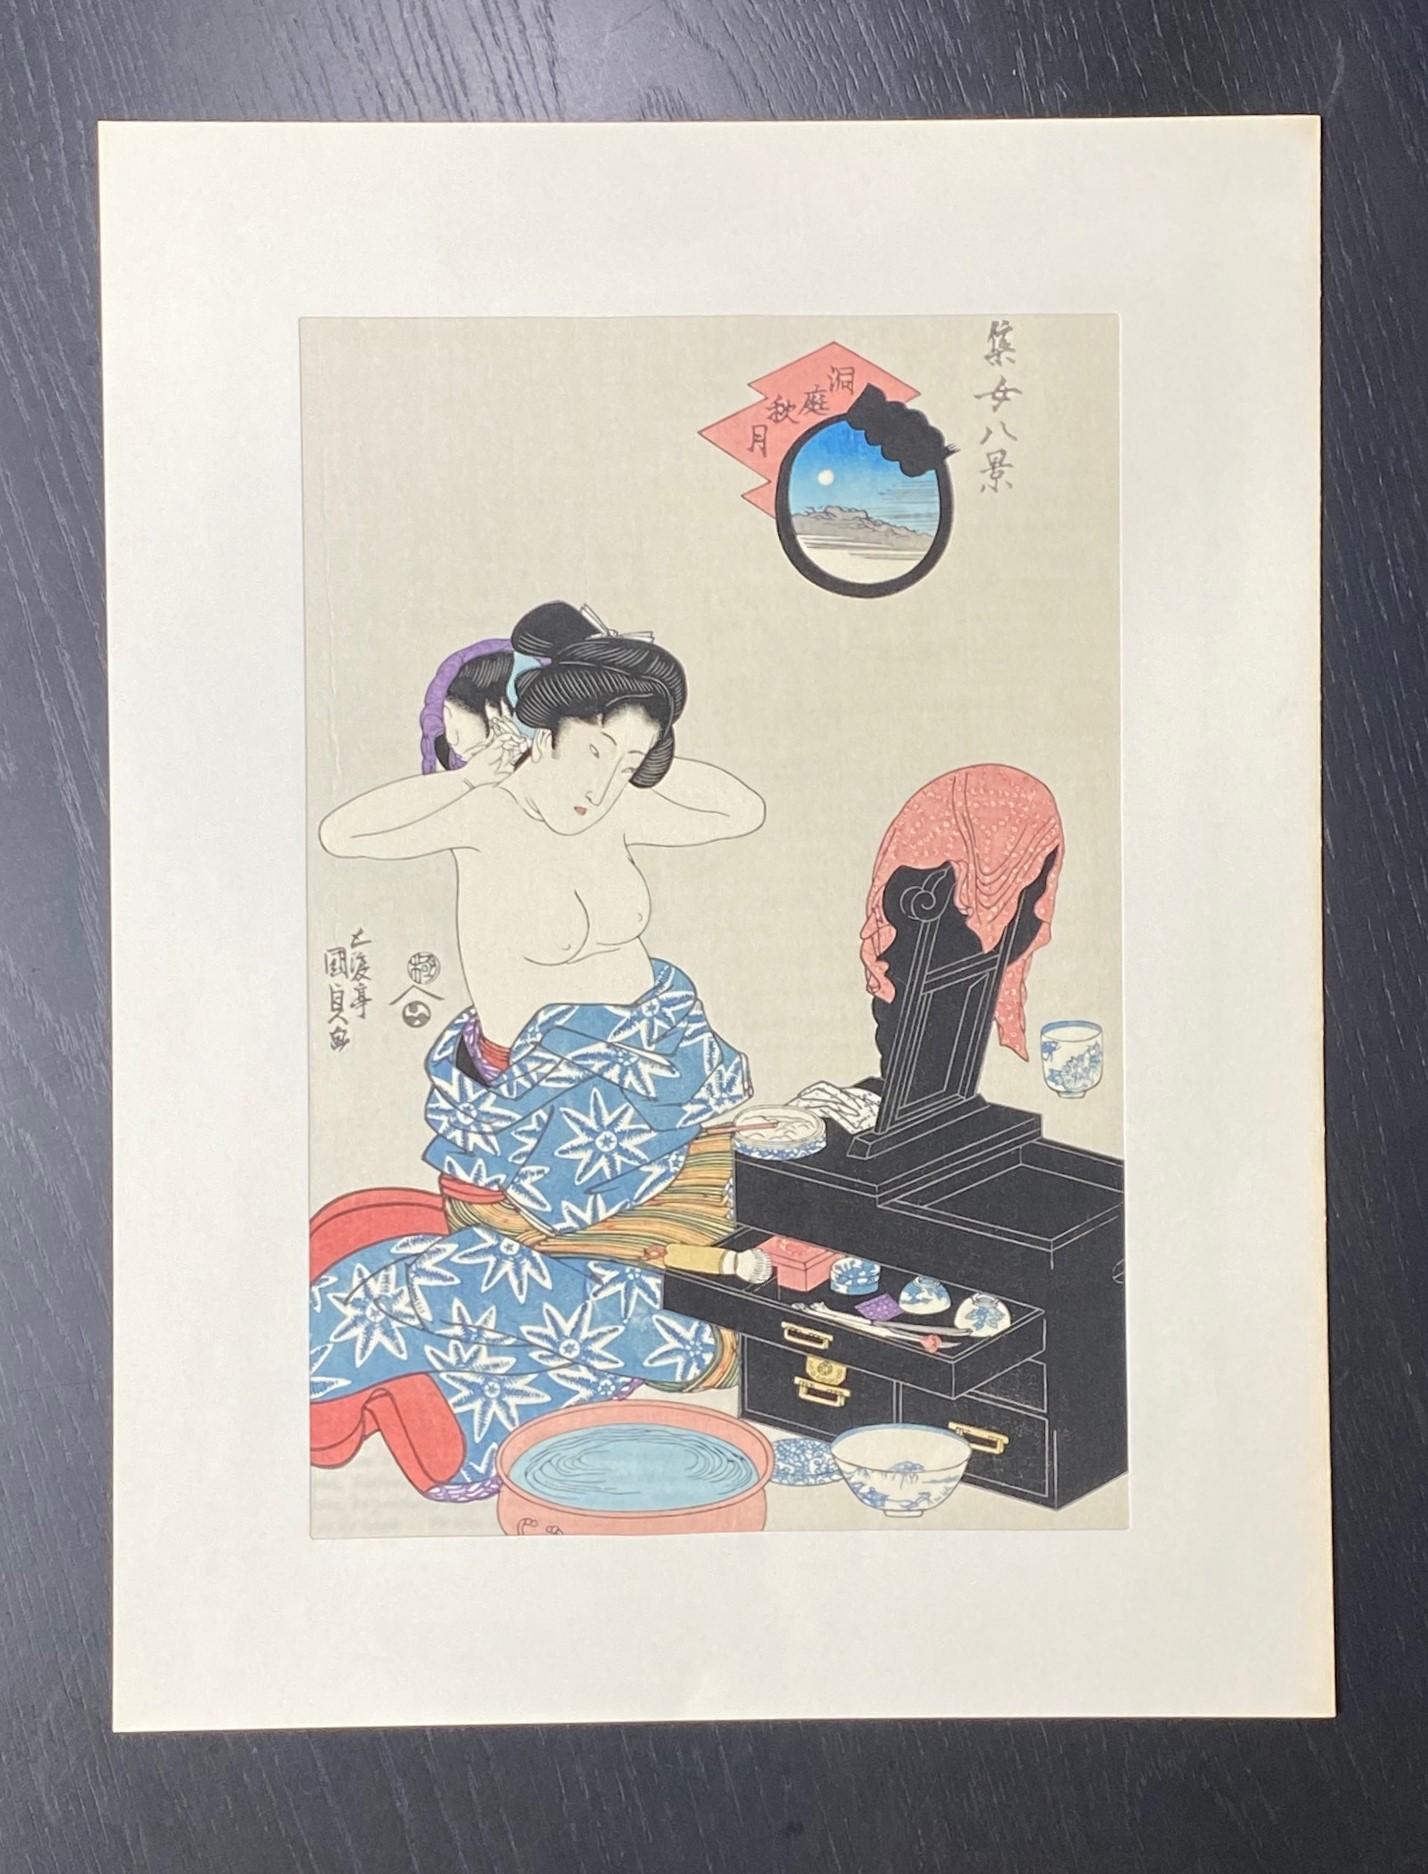 Une gravure sur bois japonaise magnifiquement composée et richement colorée représentant une femme nue à demi dévêtue, probablement une Geisha, se coiffant devant sa vanité.  Une image quelque peu érotique et osée pour l'époque.  

Il s'agit d'une